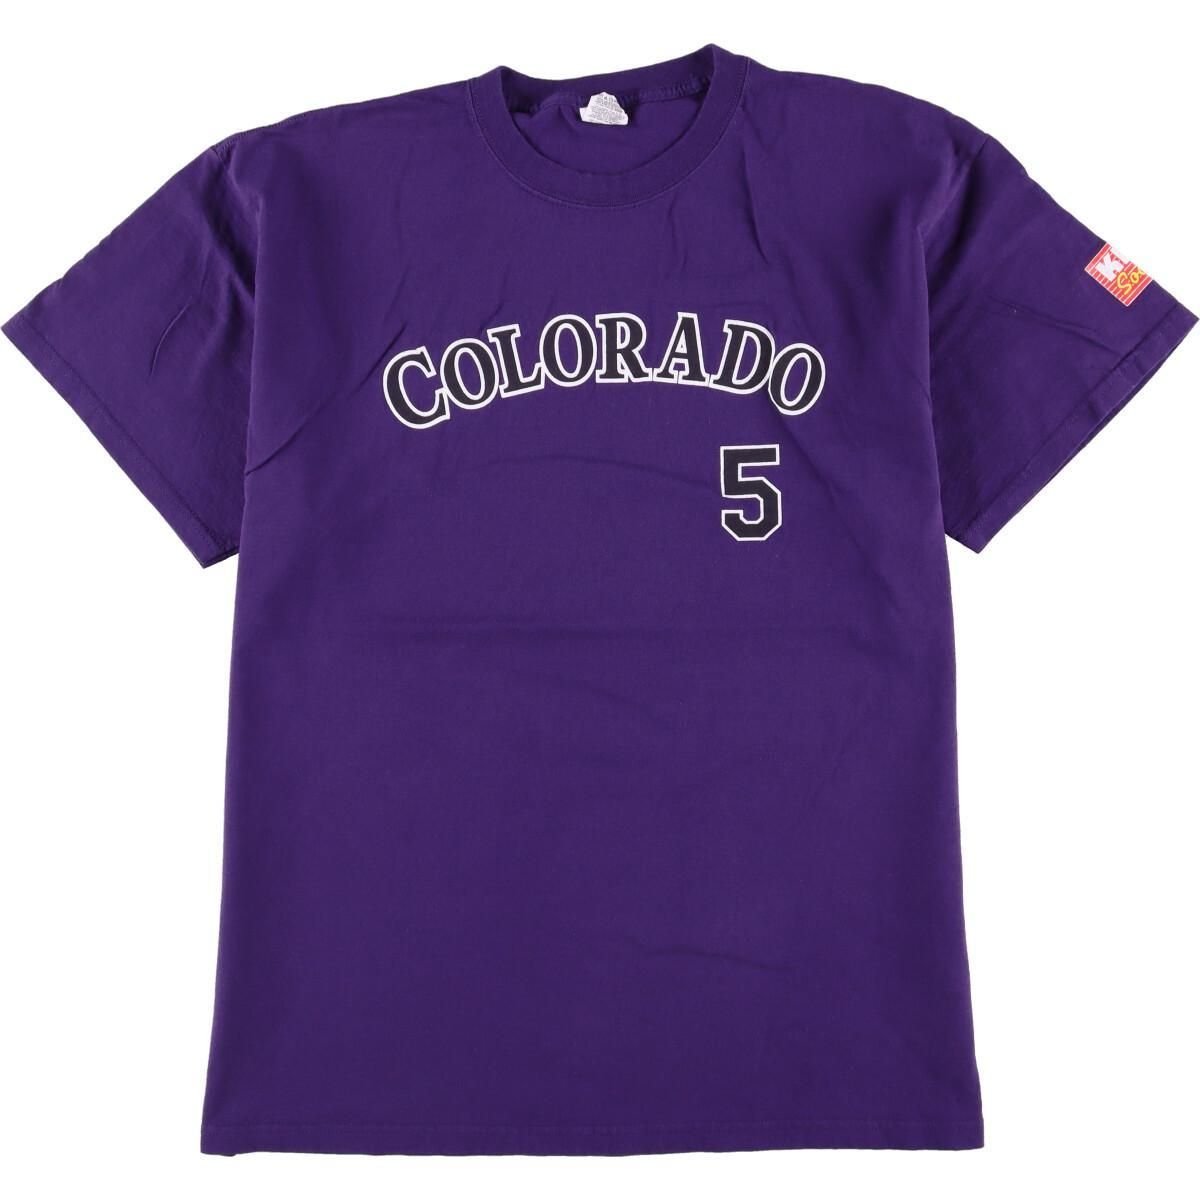 Colorado Rockies Tシャツ 紫サイズXL